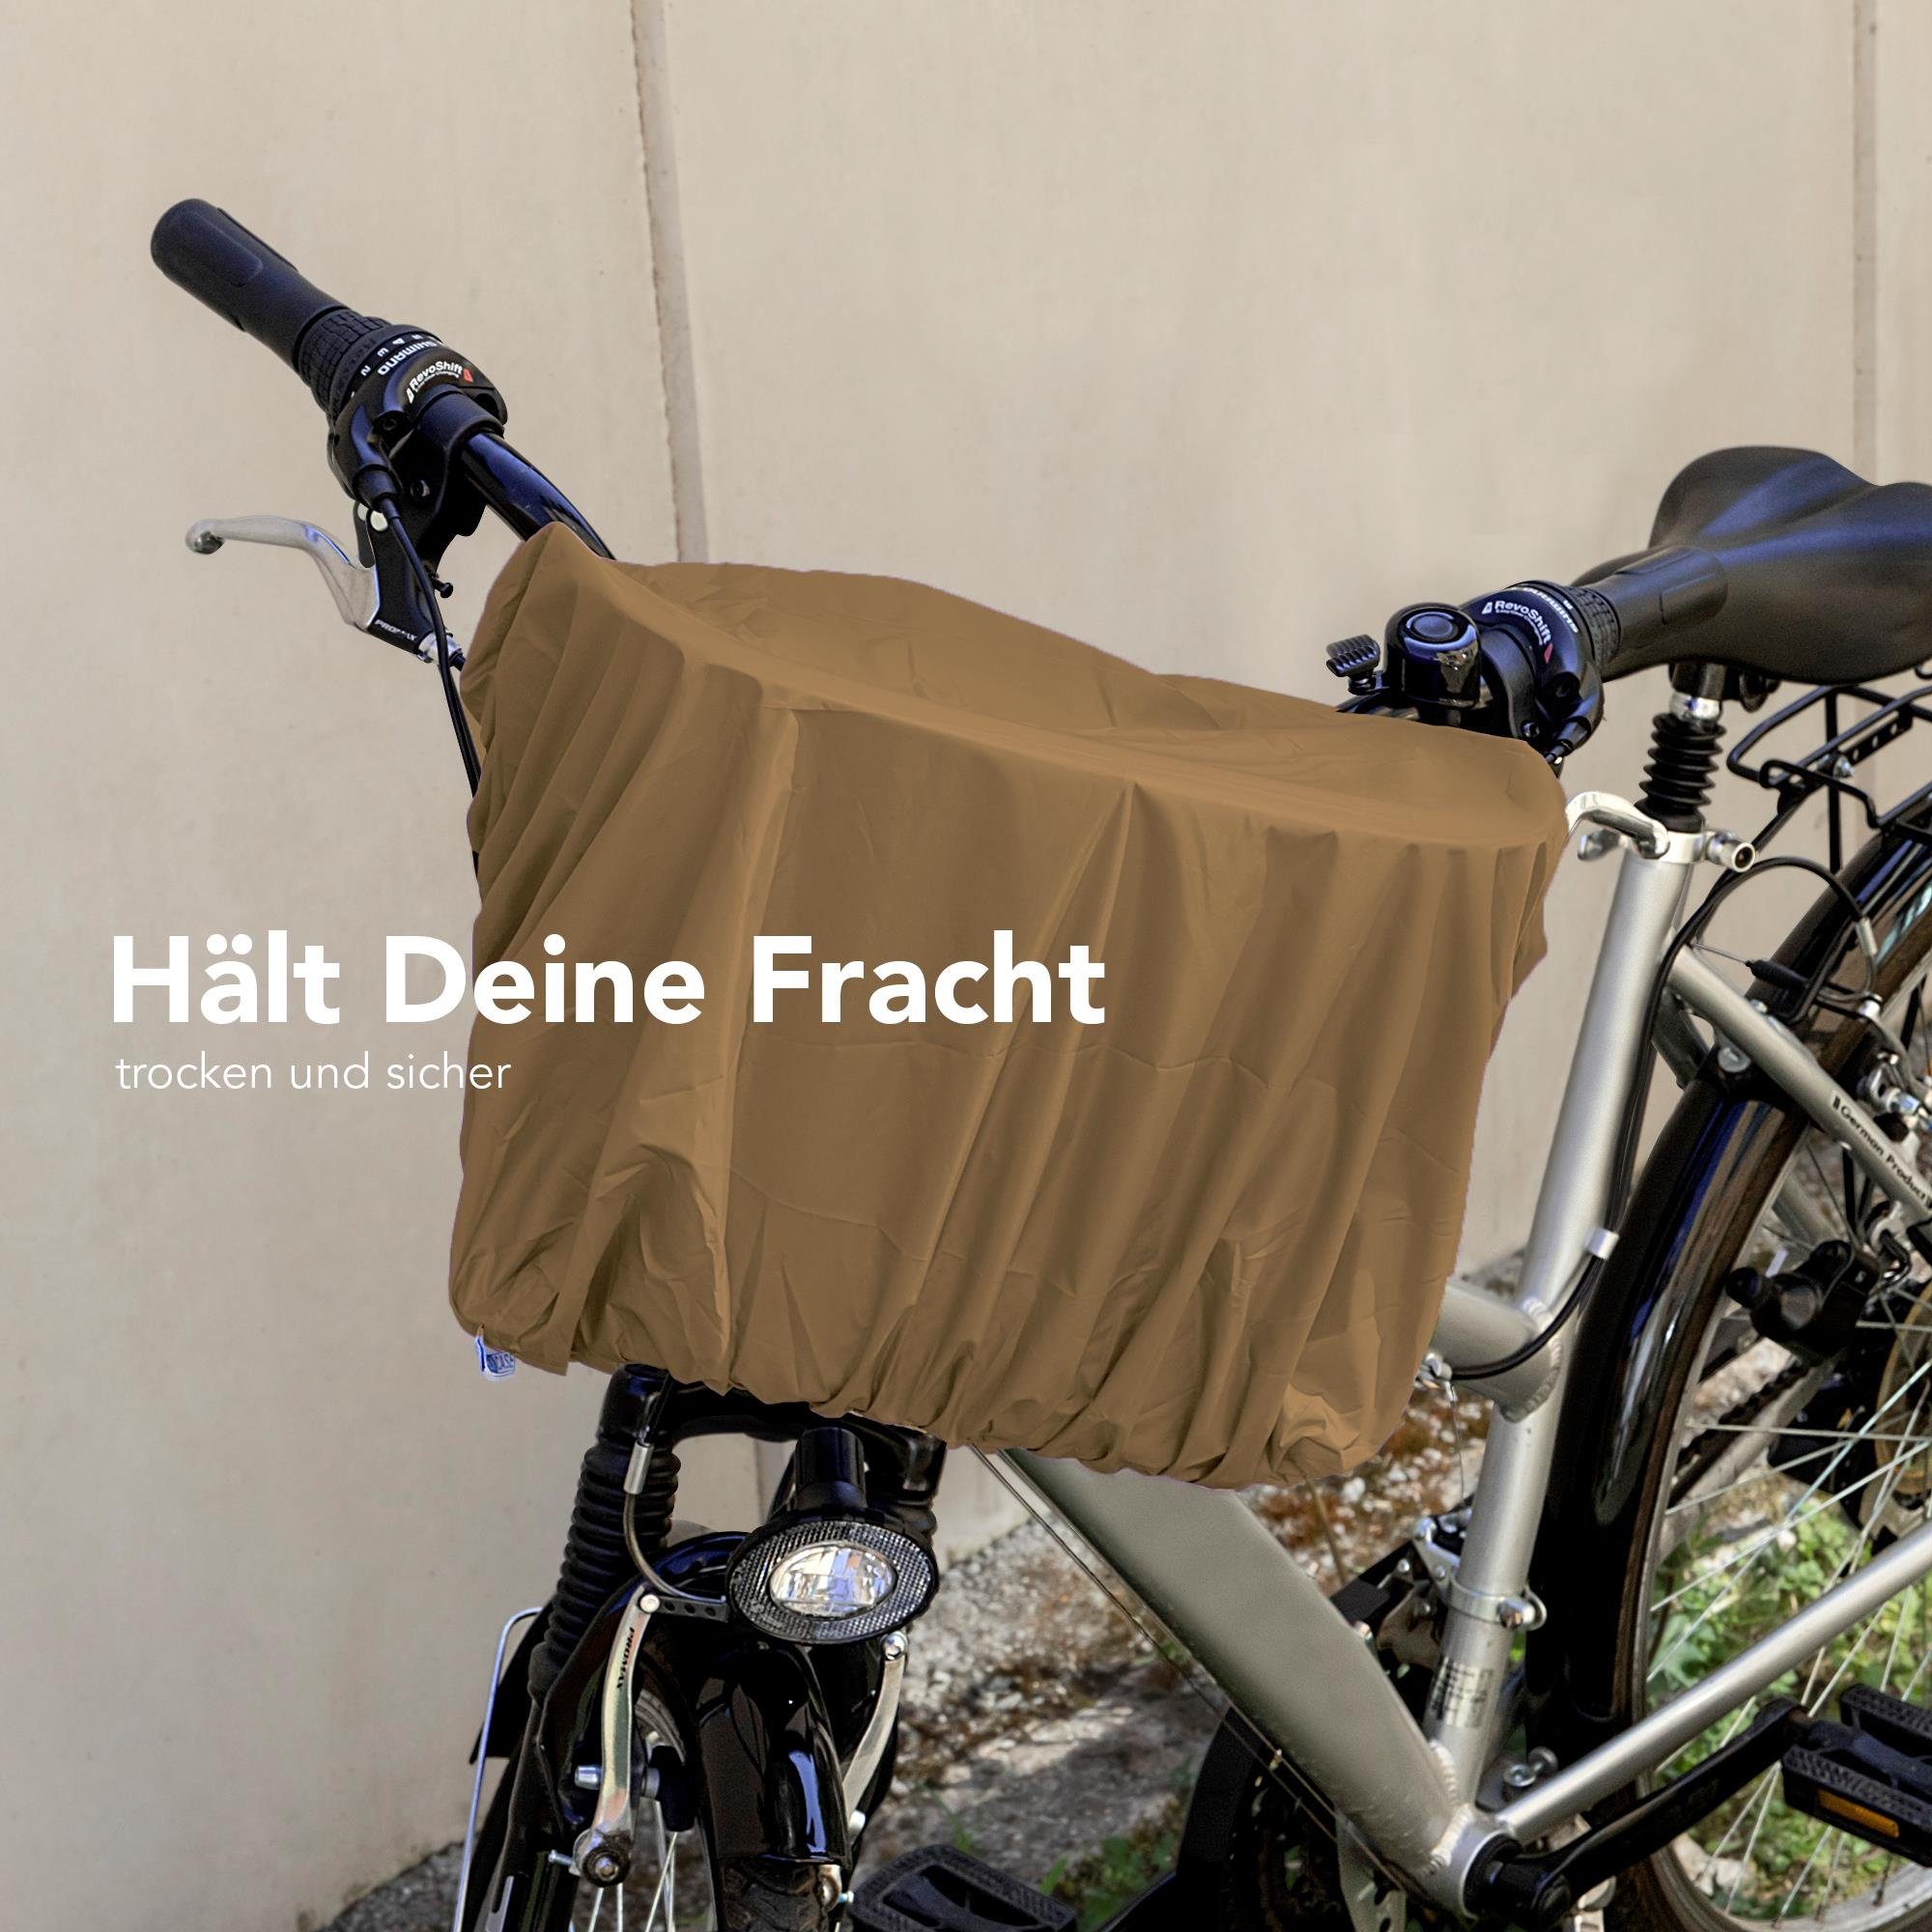 EAZY CASE Fahrradkorb Universal wasserdicht Überzug für Braun Regen Korb, elastisch Regenschutz Korbschutz Regenschutzhaube